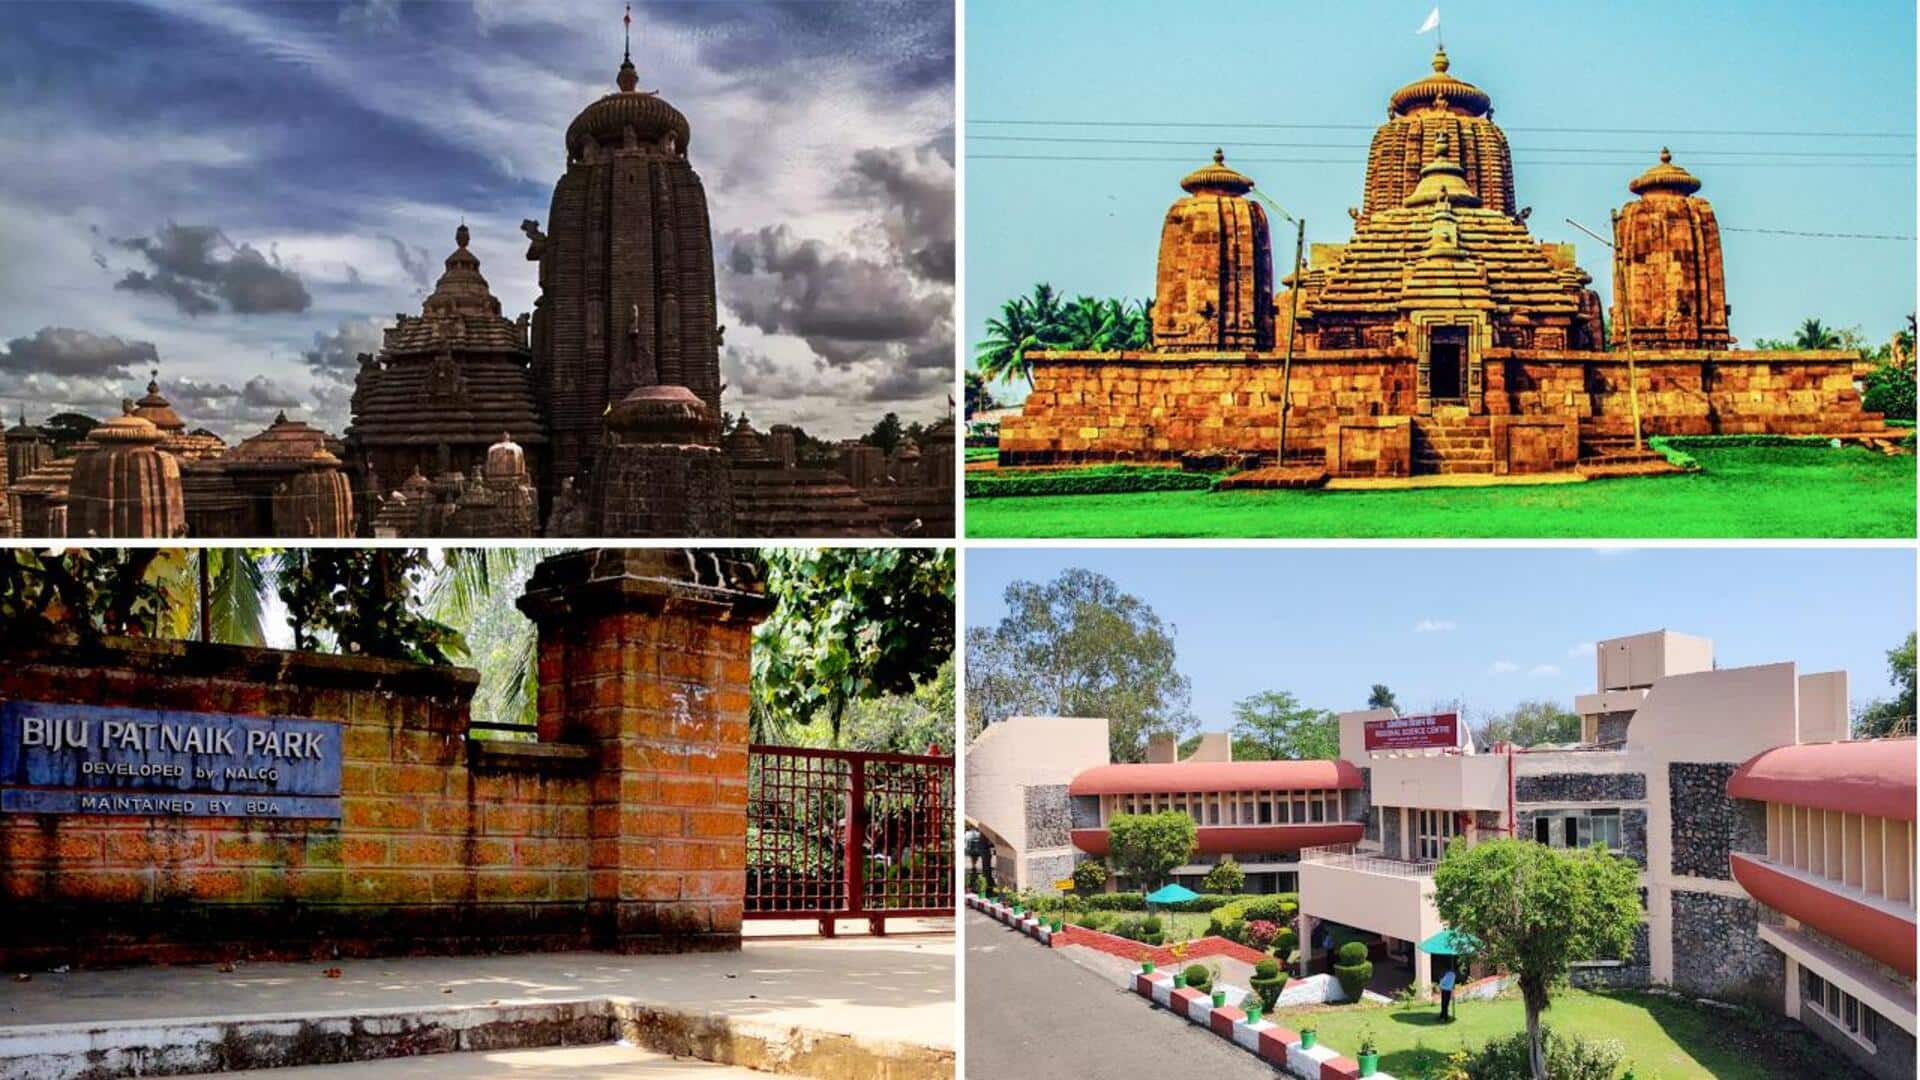 ओड़िशा: धार्मिक और खूबसूरत पर्यटन स्थलों का घर है भुवनेश्वर, जरूर बनाएं यहां घूमने का प्लान